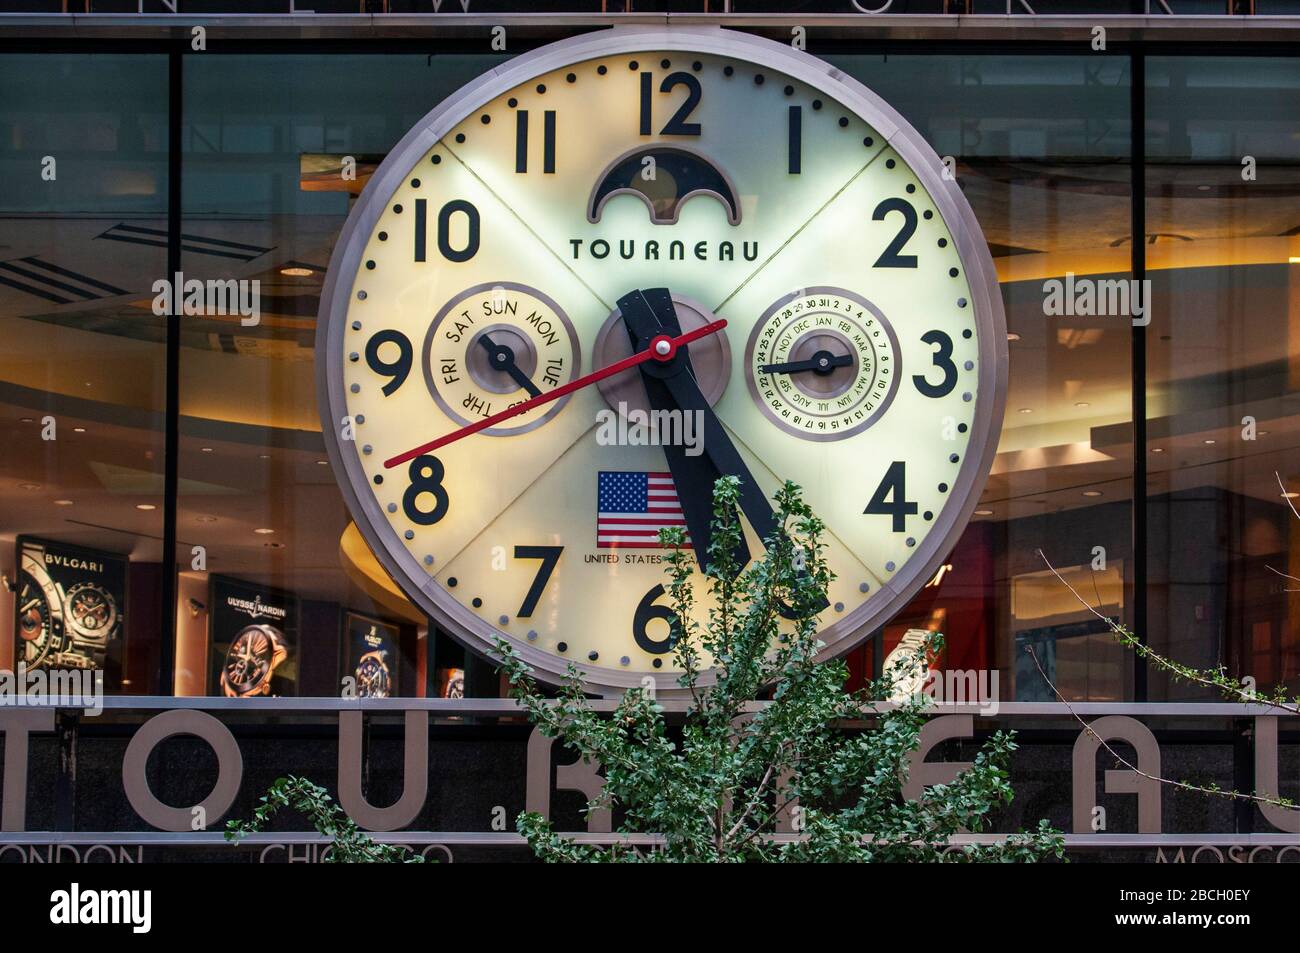 Orologio negozio di orologi il negozio Torneau a New York City USA.  Tourneau, LLC, è un rivenditore di orologi di lusso stabilito nel 1900 e  con sede negli Stati Uniti Foto stock -